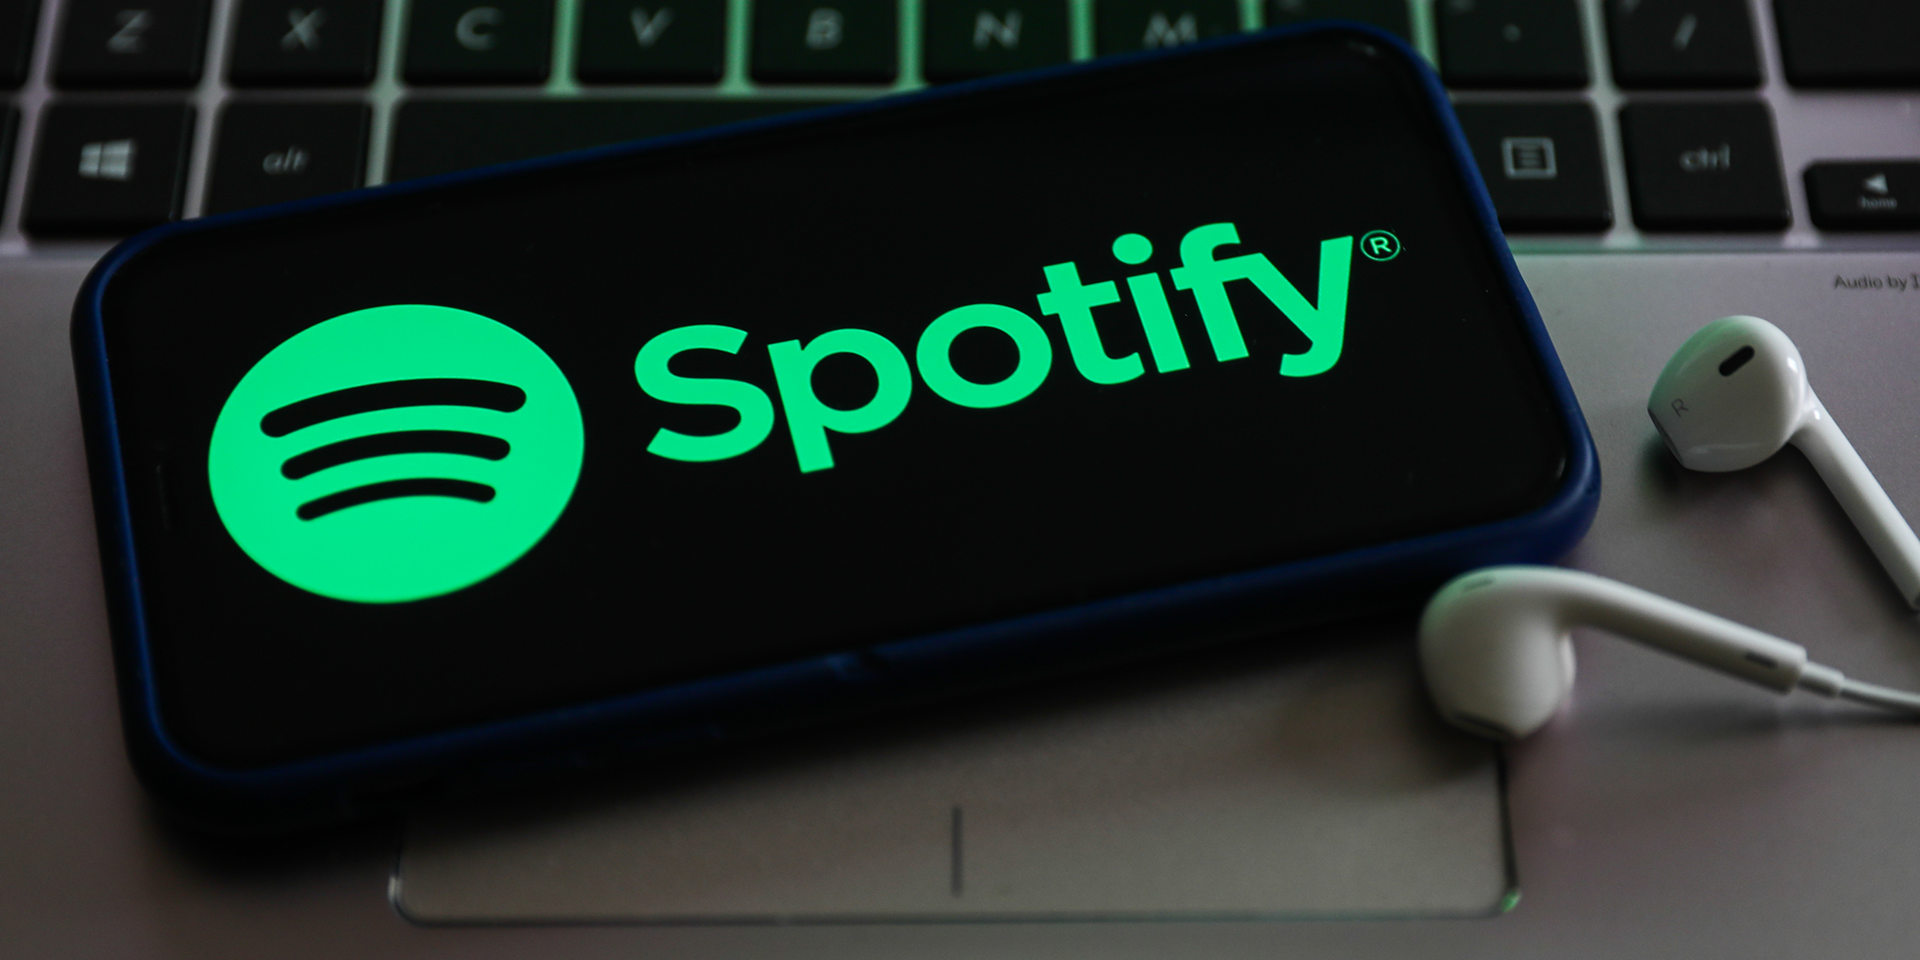 Spotify планирует добавить полноценные видеоклипы